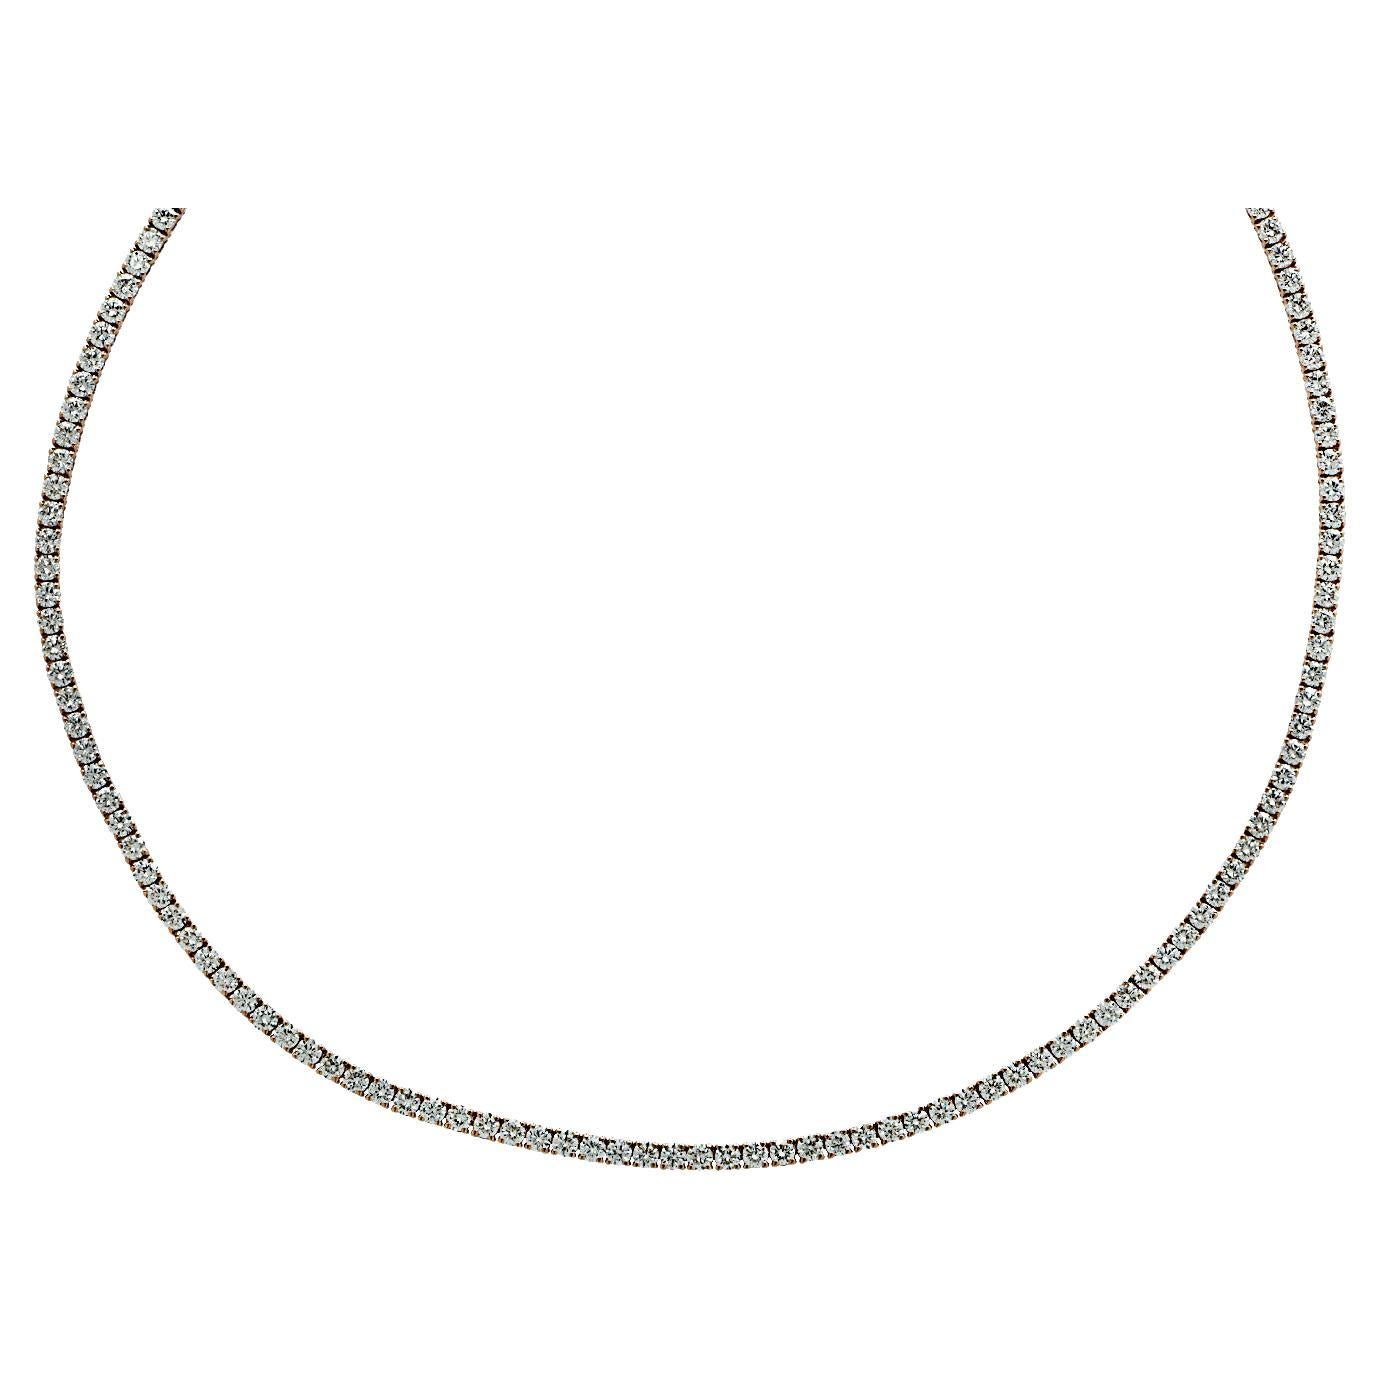 Vivid Diamonds 6.42 Carat Straight Line Diamond Tennis Necklace